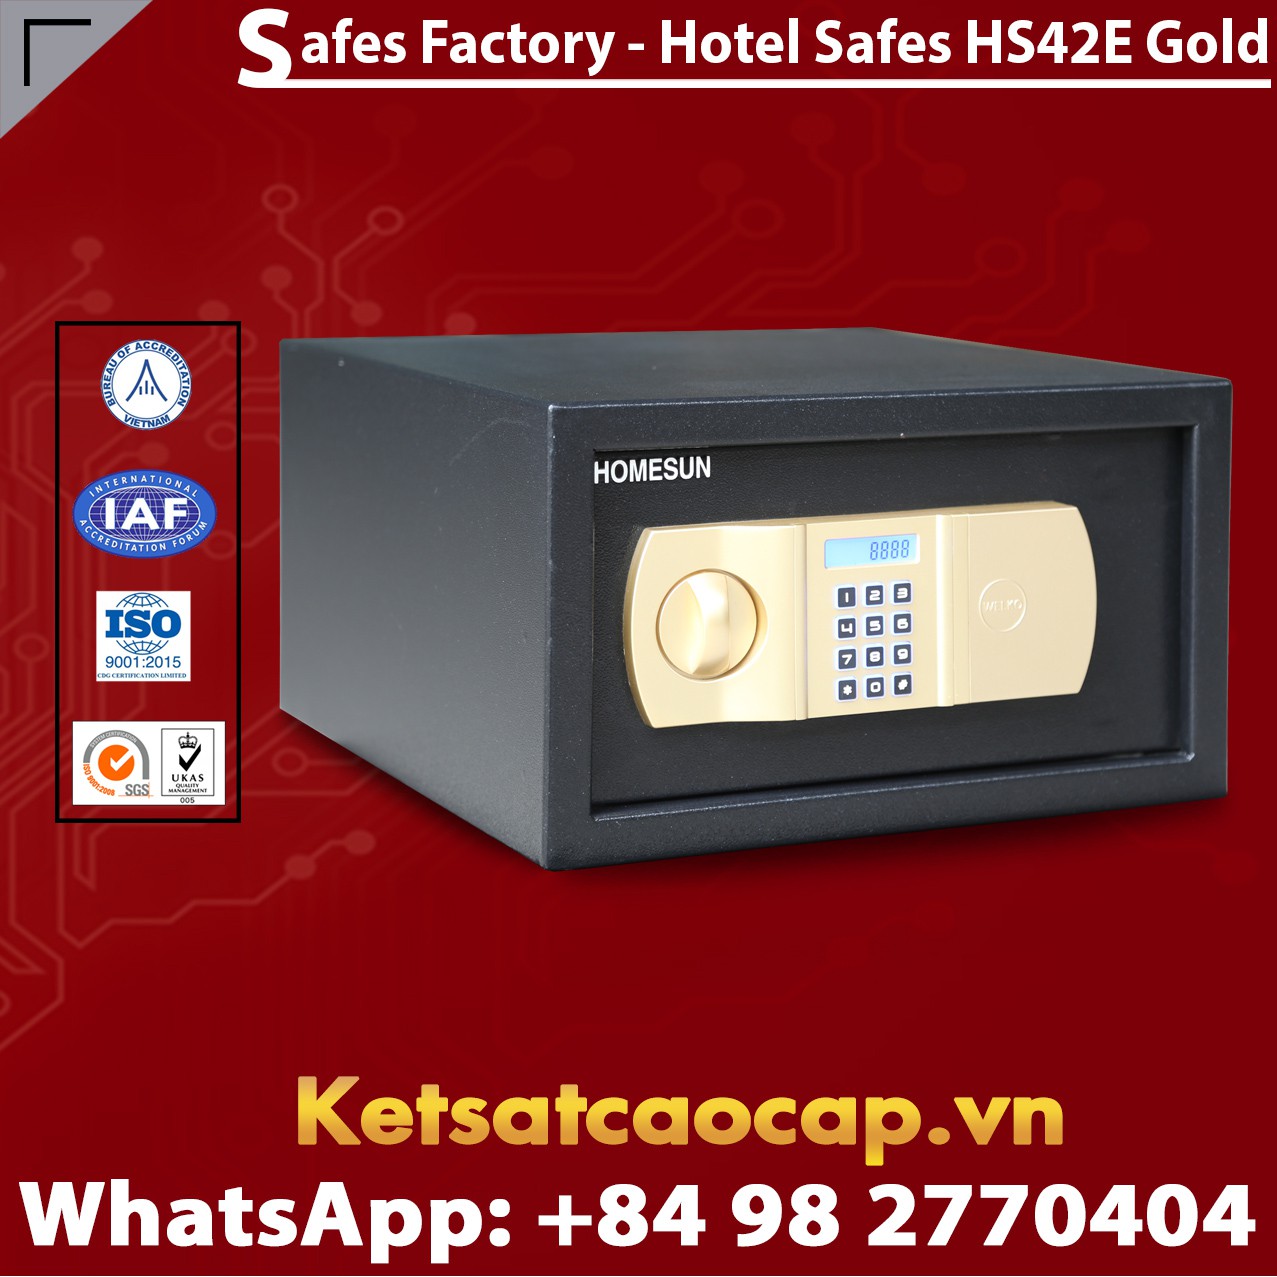 Hotel Room Safe HOMESUN HS42 E Gold